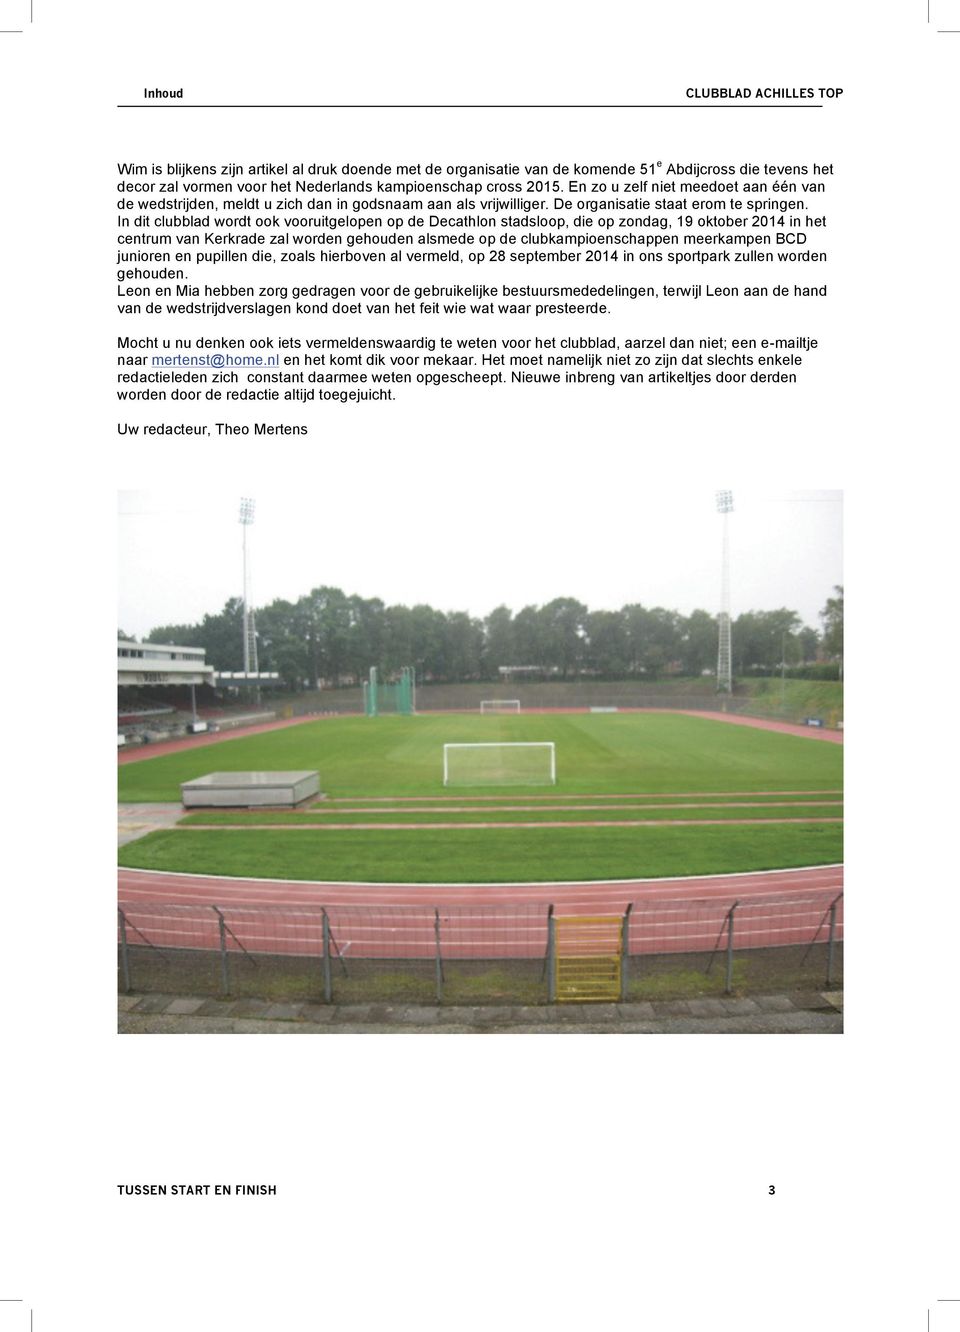 In dit clubblad wordt ook vooruitgelopen op de Decathlon stadsloop, die op zondag, 19 oktober 2014 in het centrum van Kerkrade zal worden gehouden alsmede op de clubkampioenschappen meerkampen BCD